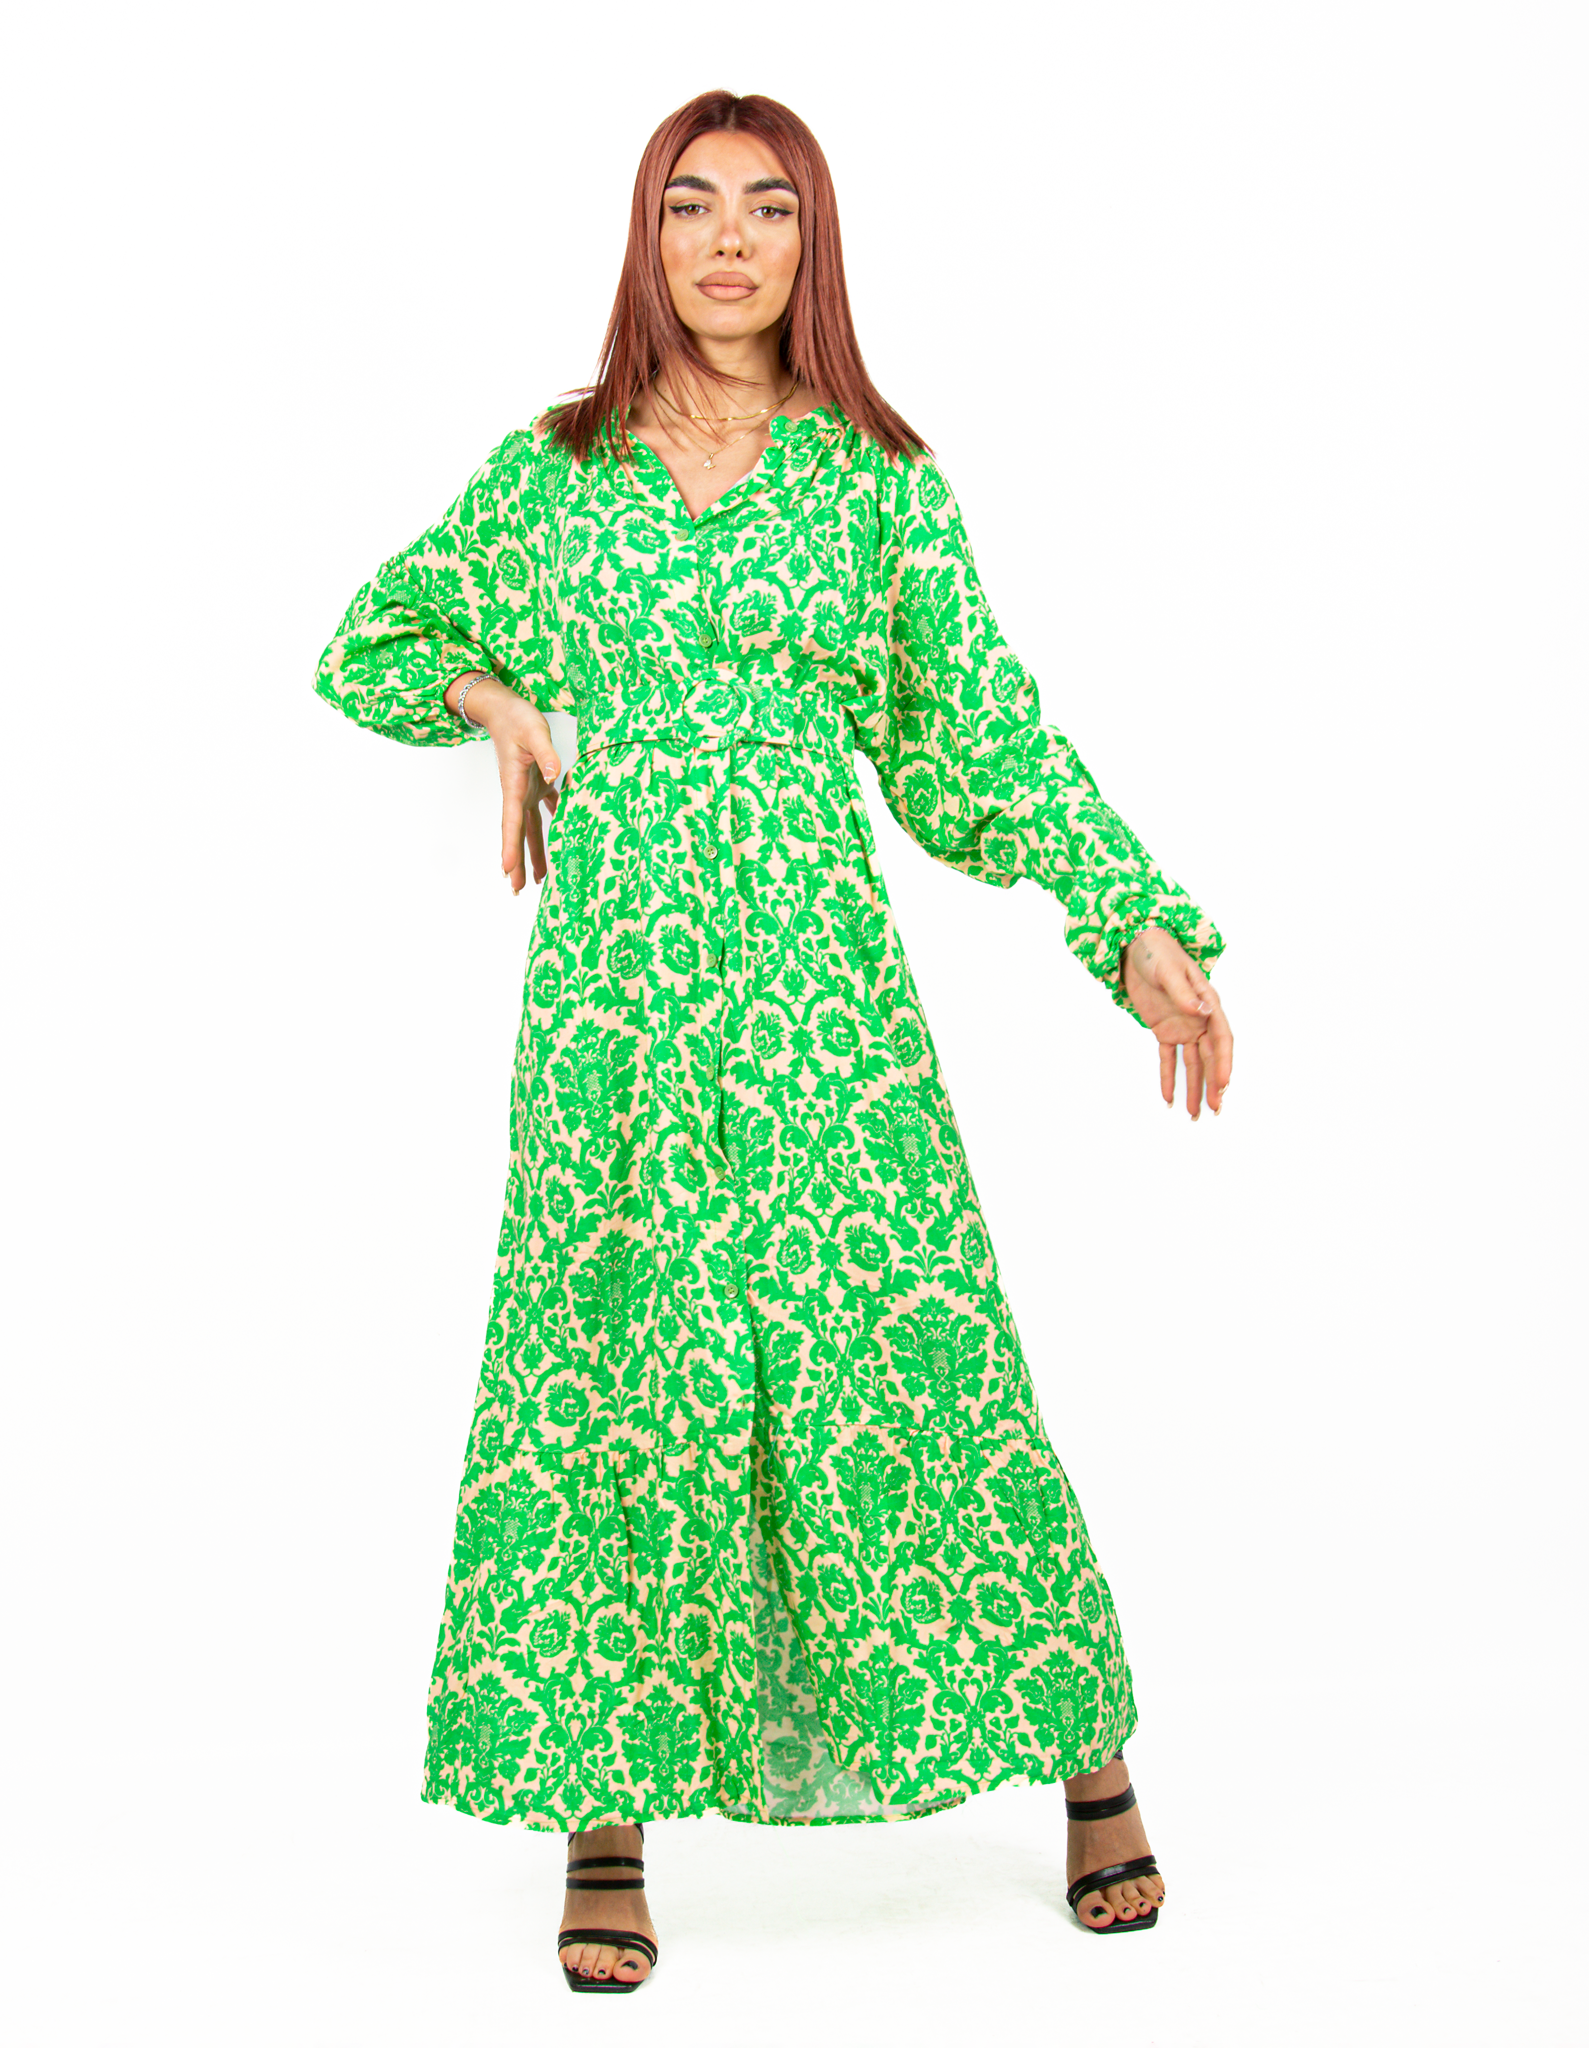 Φόρεμα Σεμιζίε με Ζώνη Baroque Πράσινο-Μπεζ | EllenBoutique